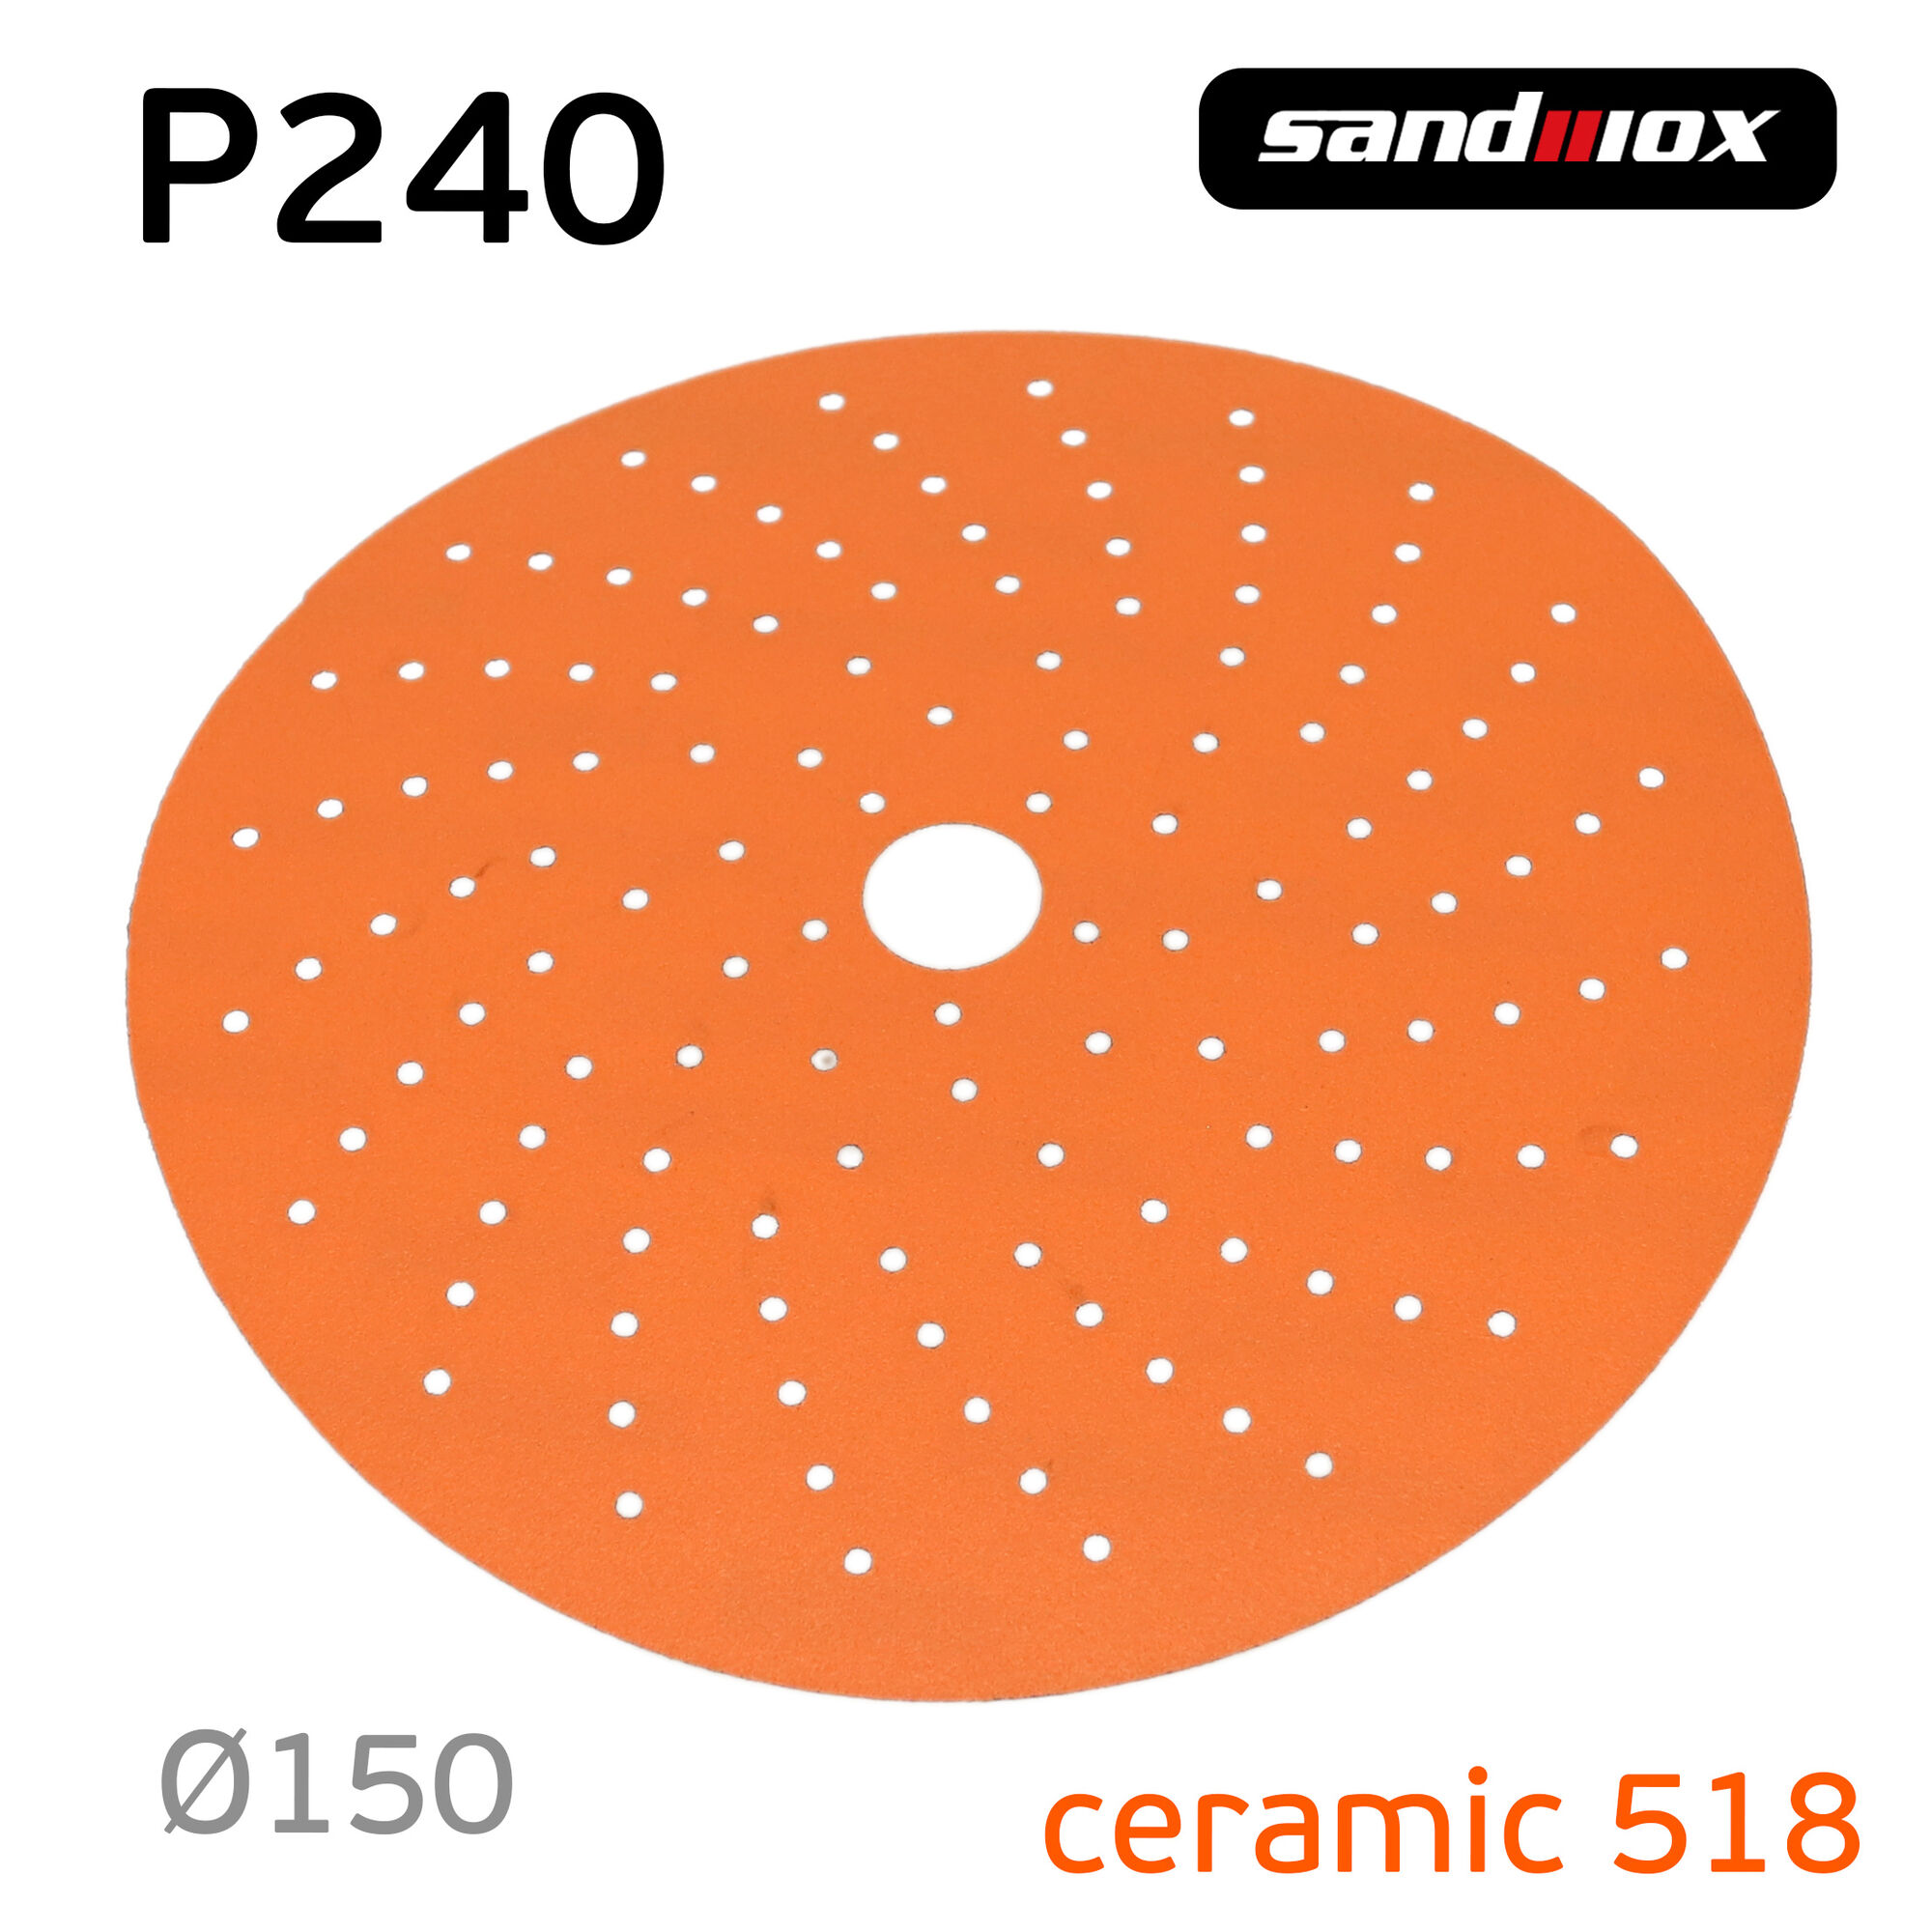 Круг Sandwox 518 (P240; 150мм) Orange Ceramic керамика multihole